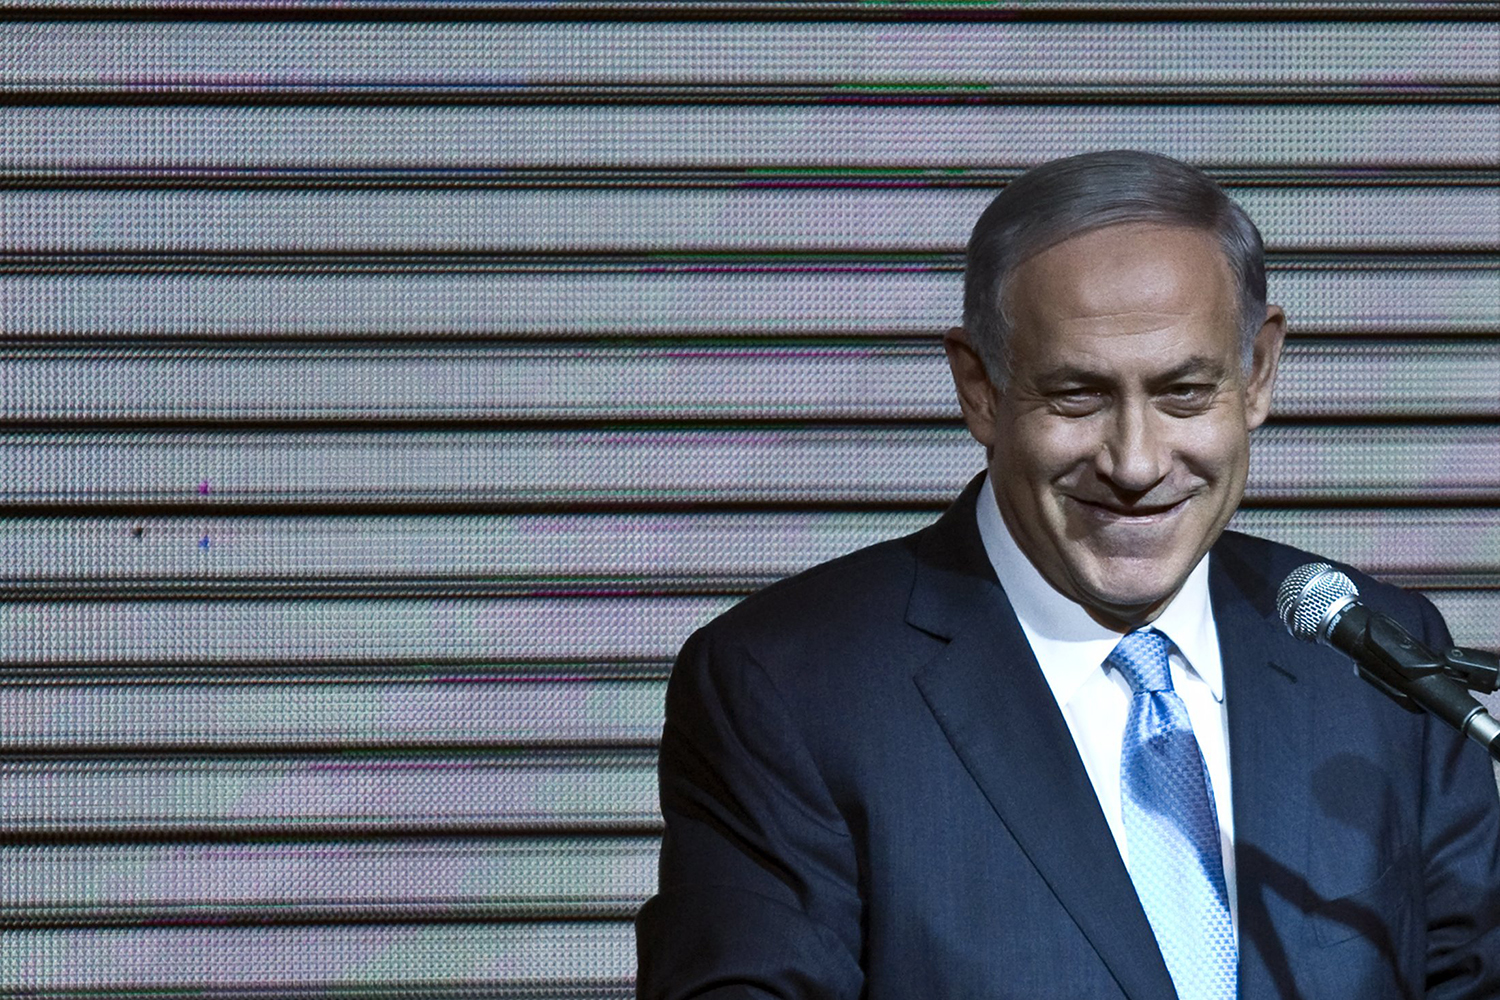 Netanyahu cambia de posición sobre Palestina